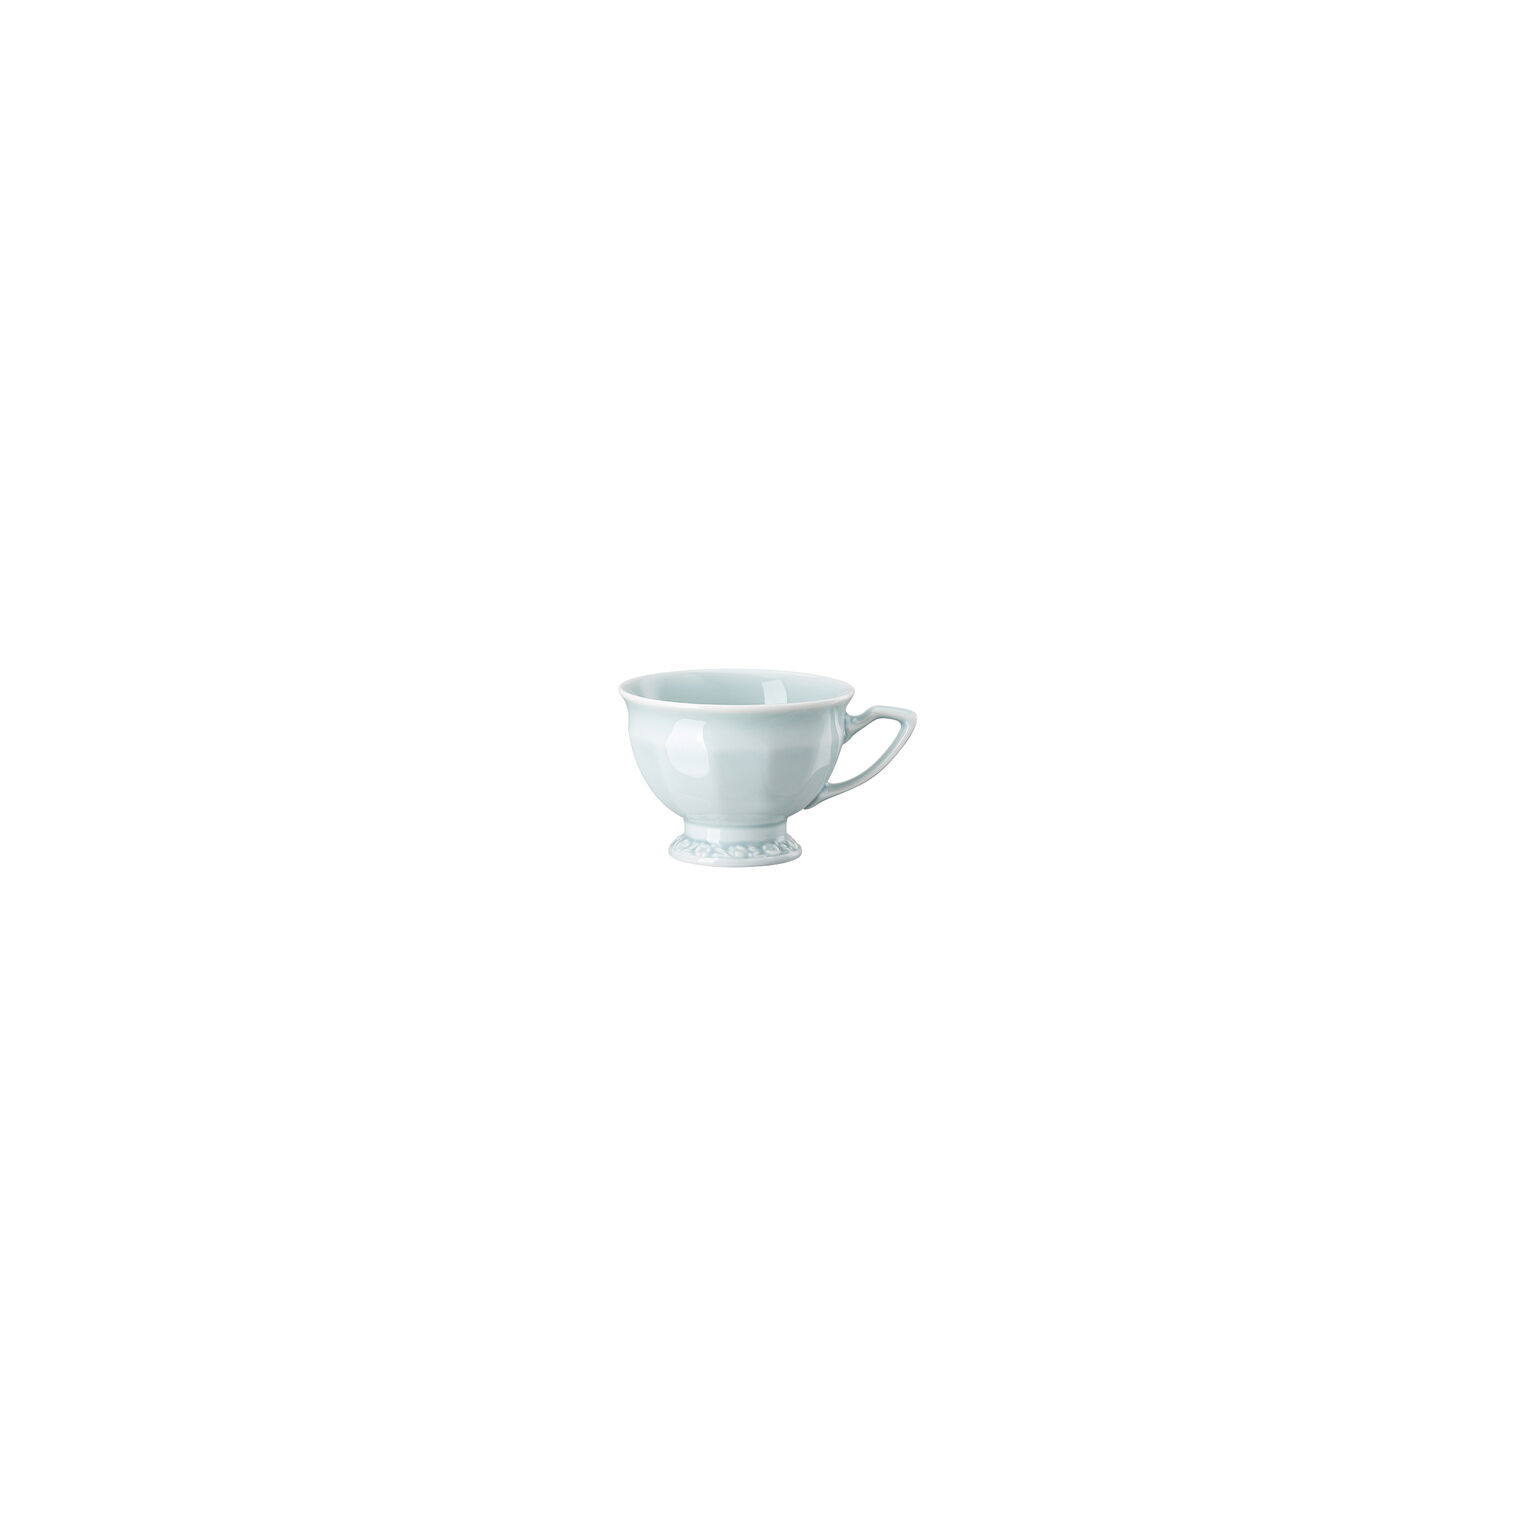 2x Porzellan Kaffee-Becher Kaffeebecher Trinkbecher Tasse Coffee Mug I ❤ München 